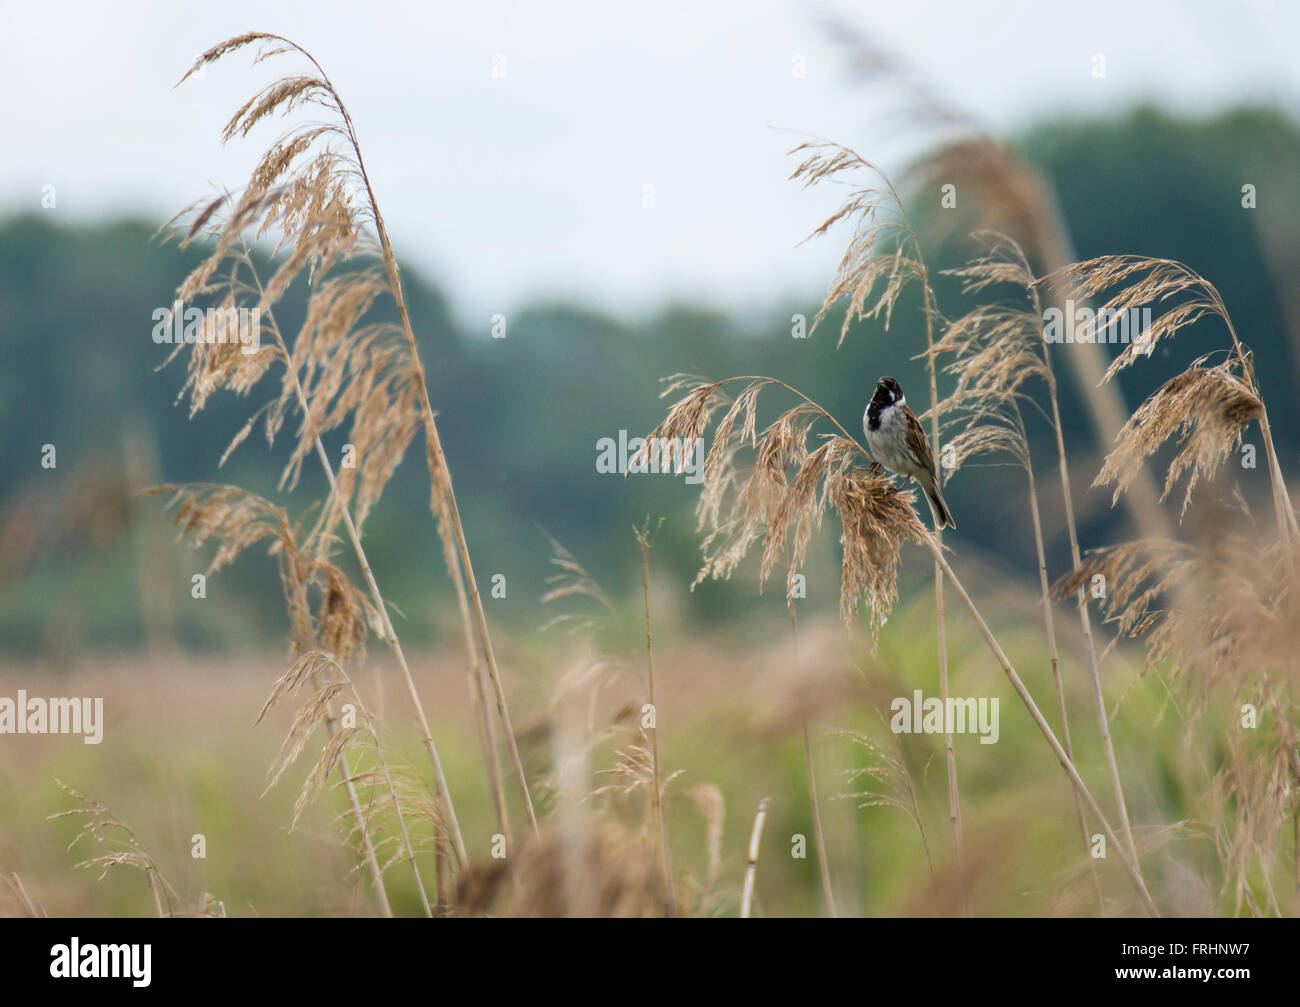 Common Reed Bunting (Emberiza pusilla) Stock Photo